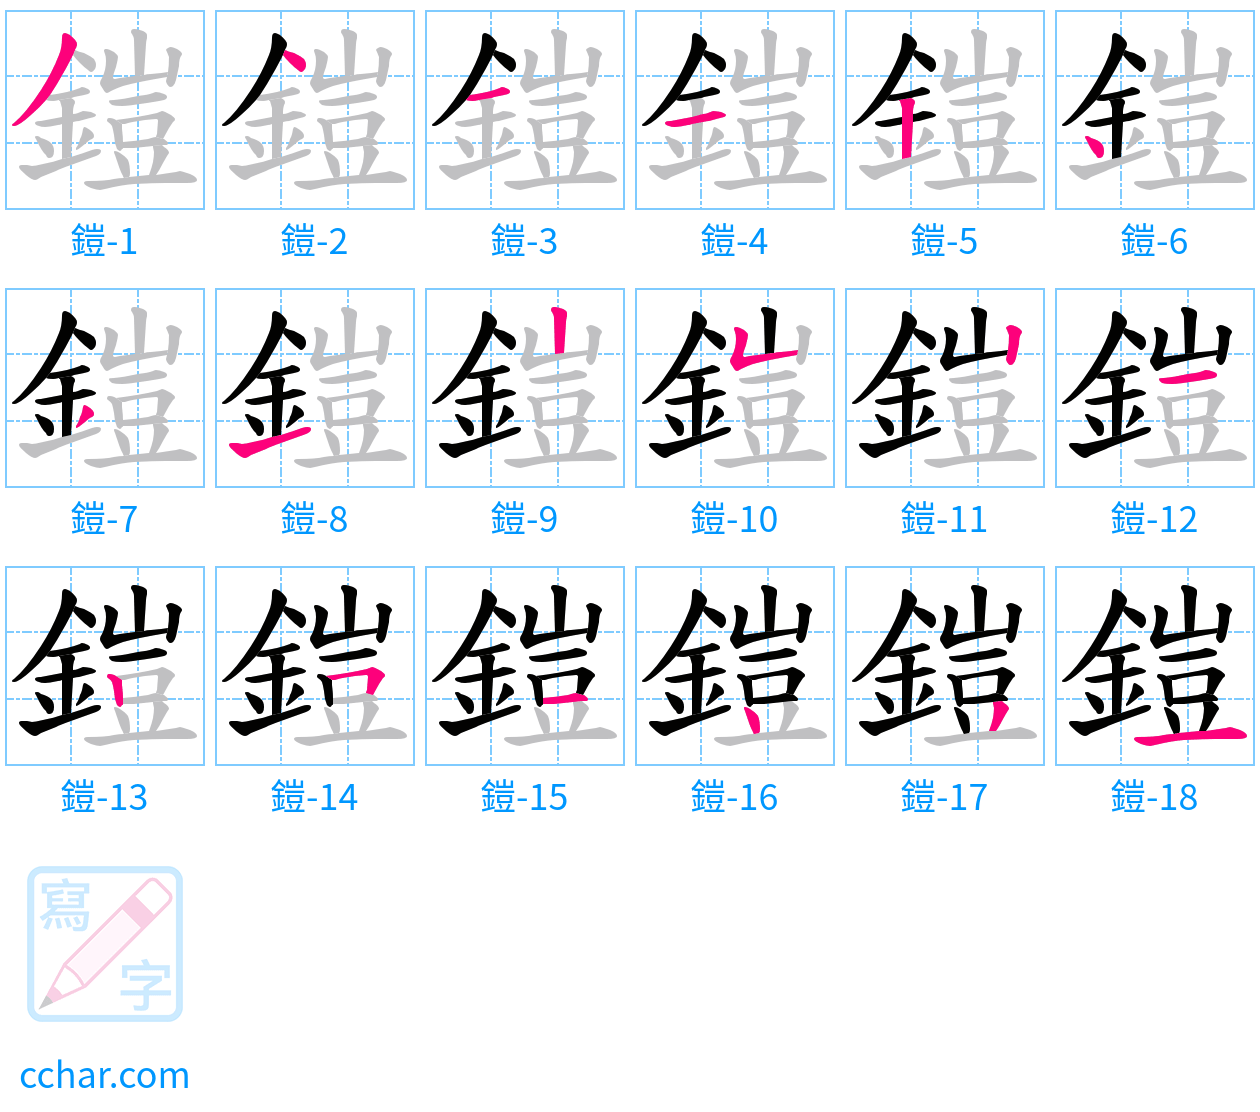 鎧 stroke order step-by-step diagram